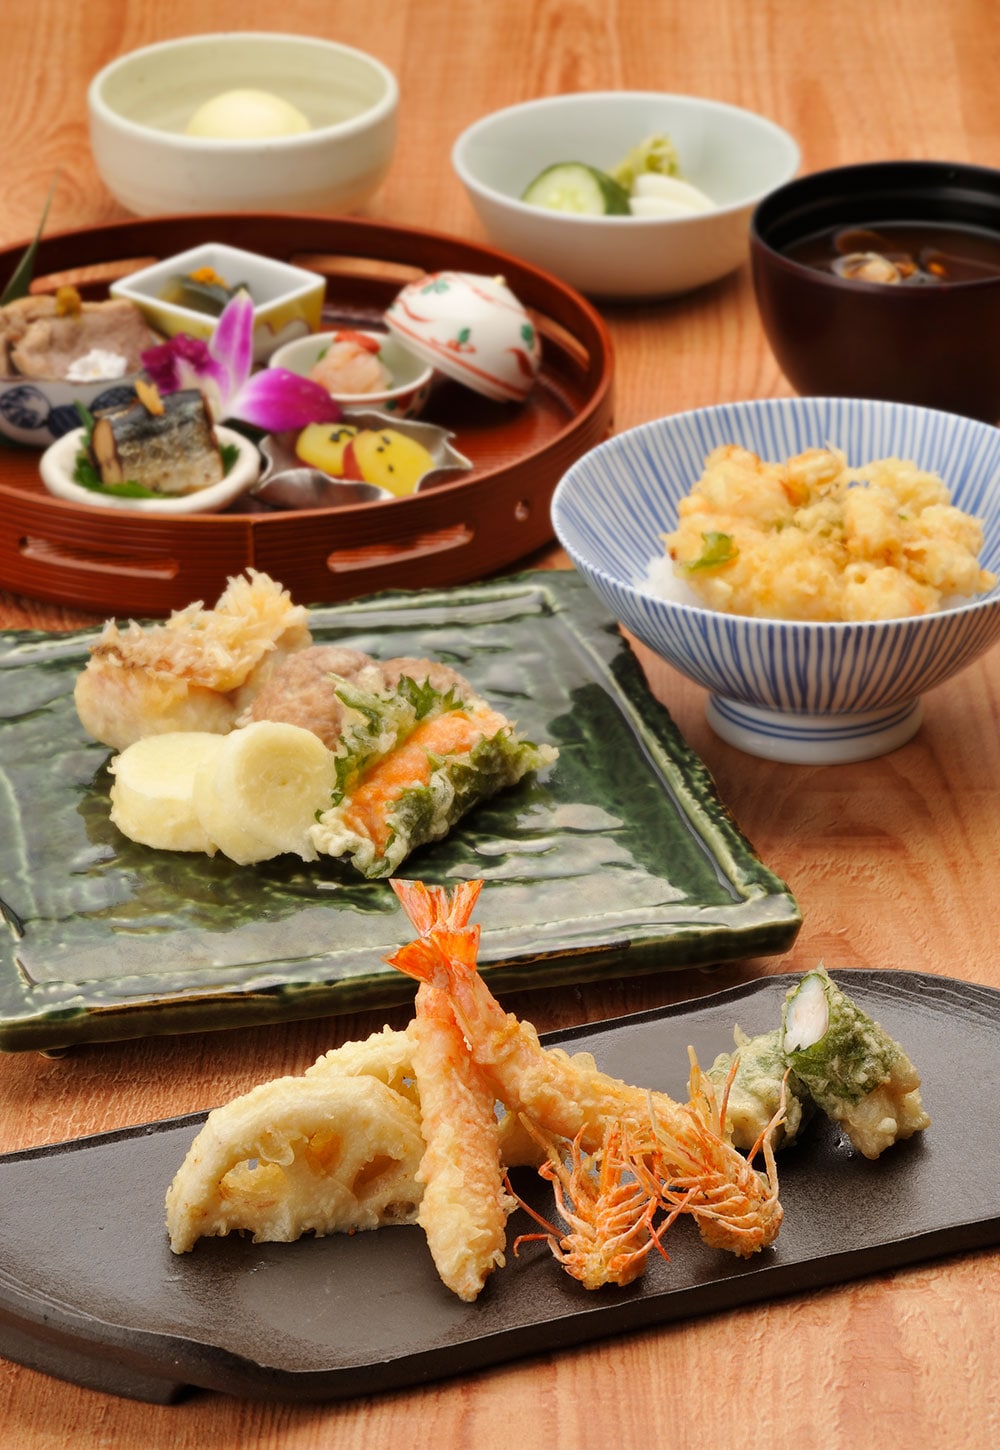 てんぷらと和食「山の上」のリニューアルオープン記念料理イメージ。